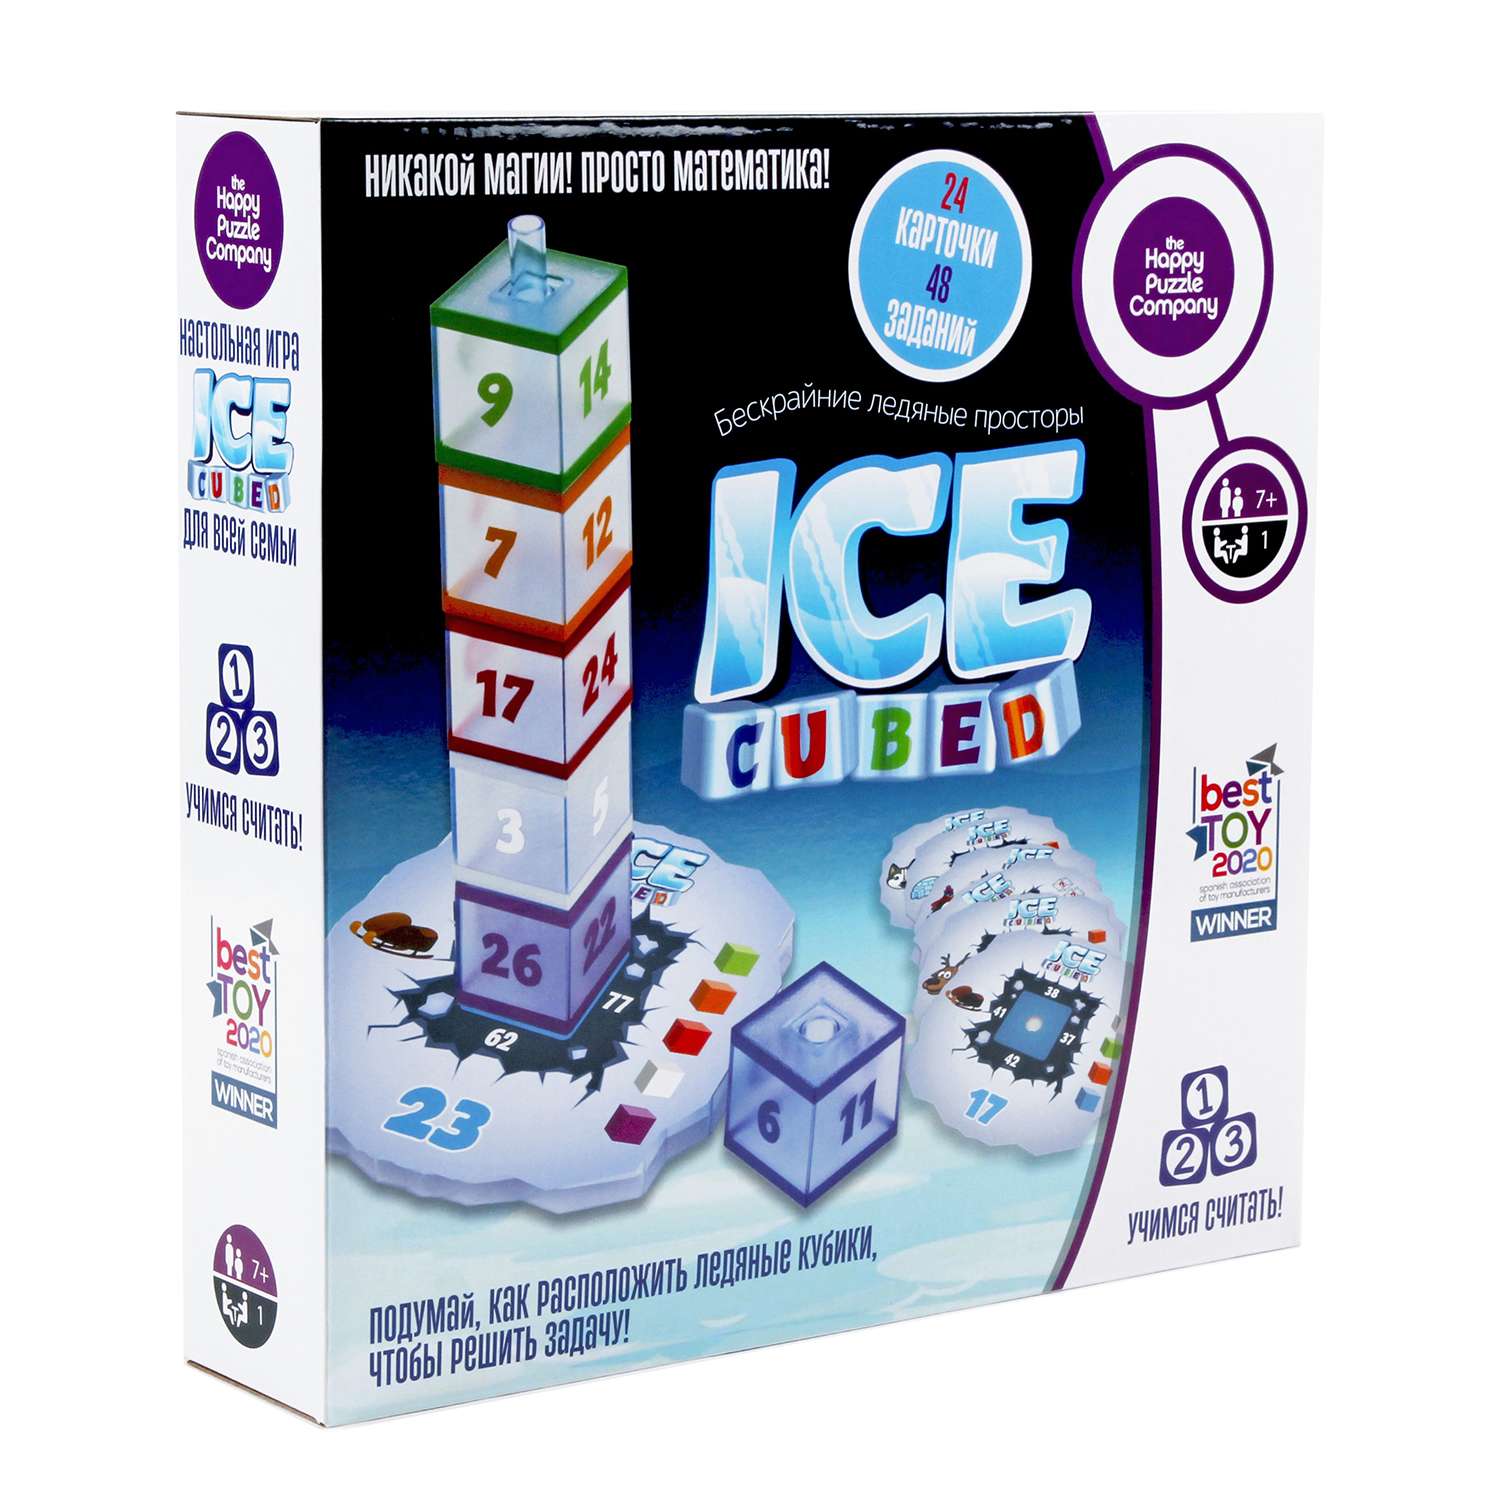 Игра настольная Happy Puzzle математическая головоломка Бескрайние Ледяные Просторы - фото 3